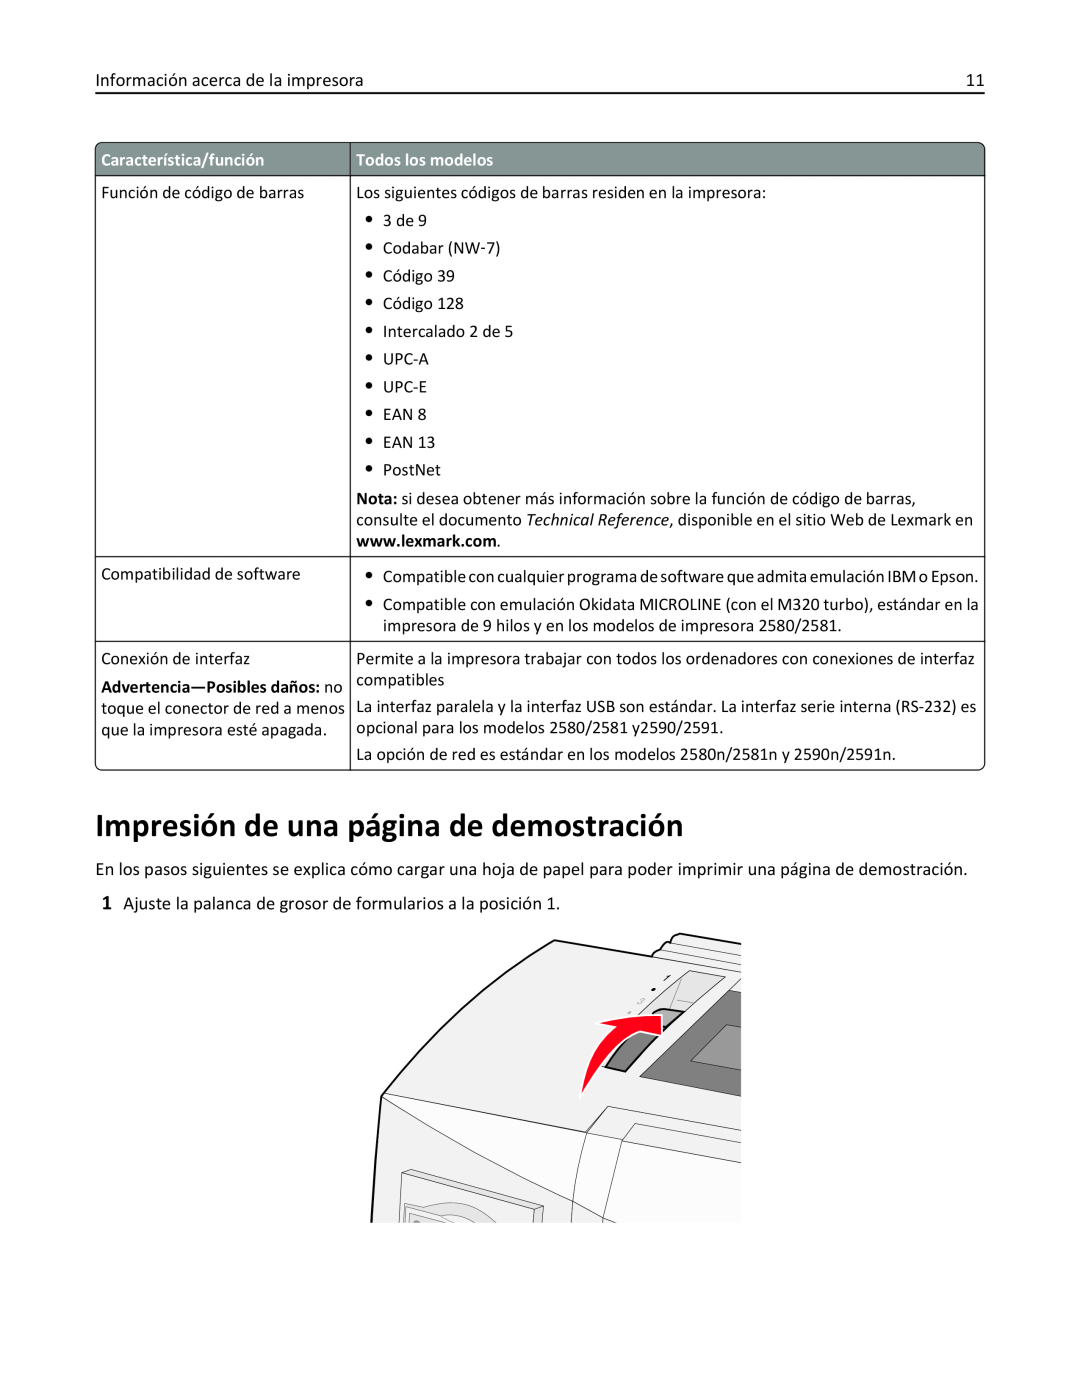 Lexmark 2500 manual Impresión de una página de demostración, Advertencia-Posibles daños no 